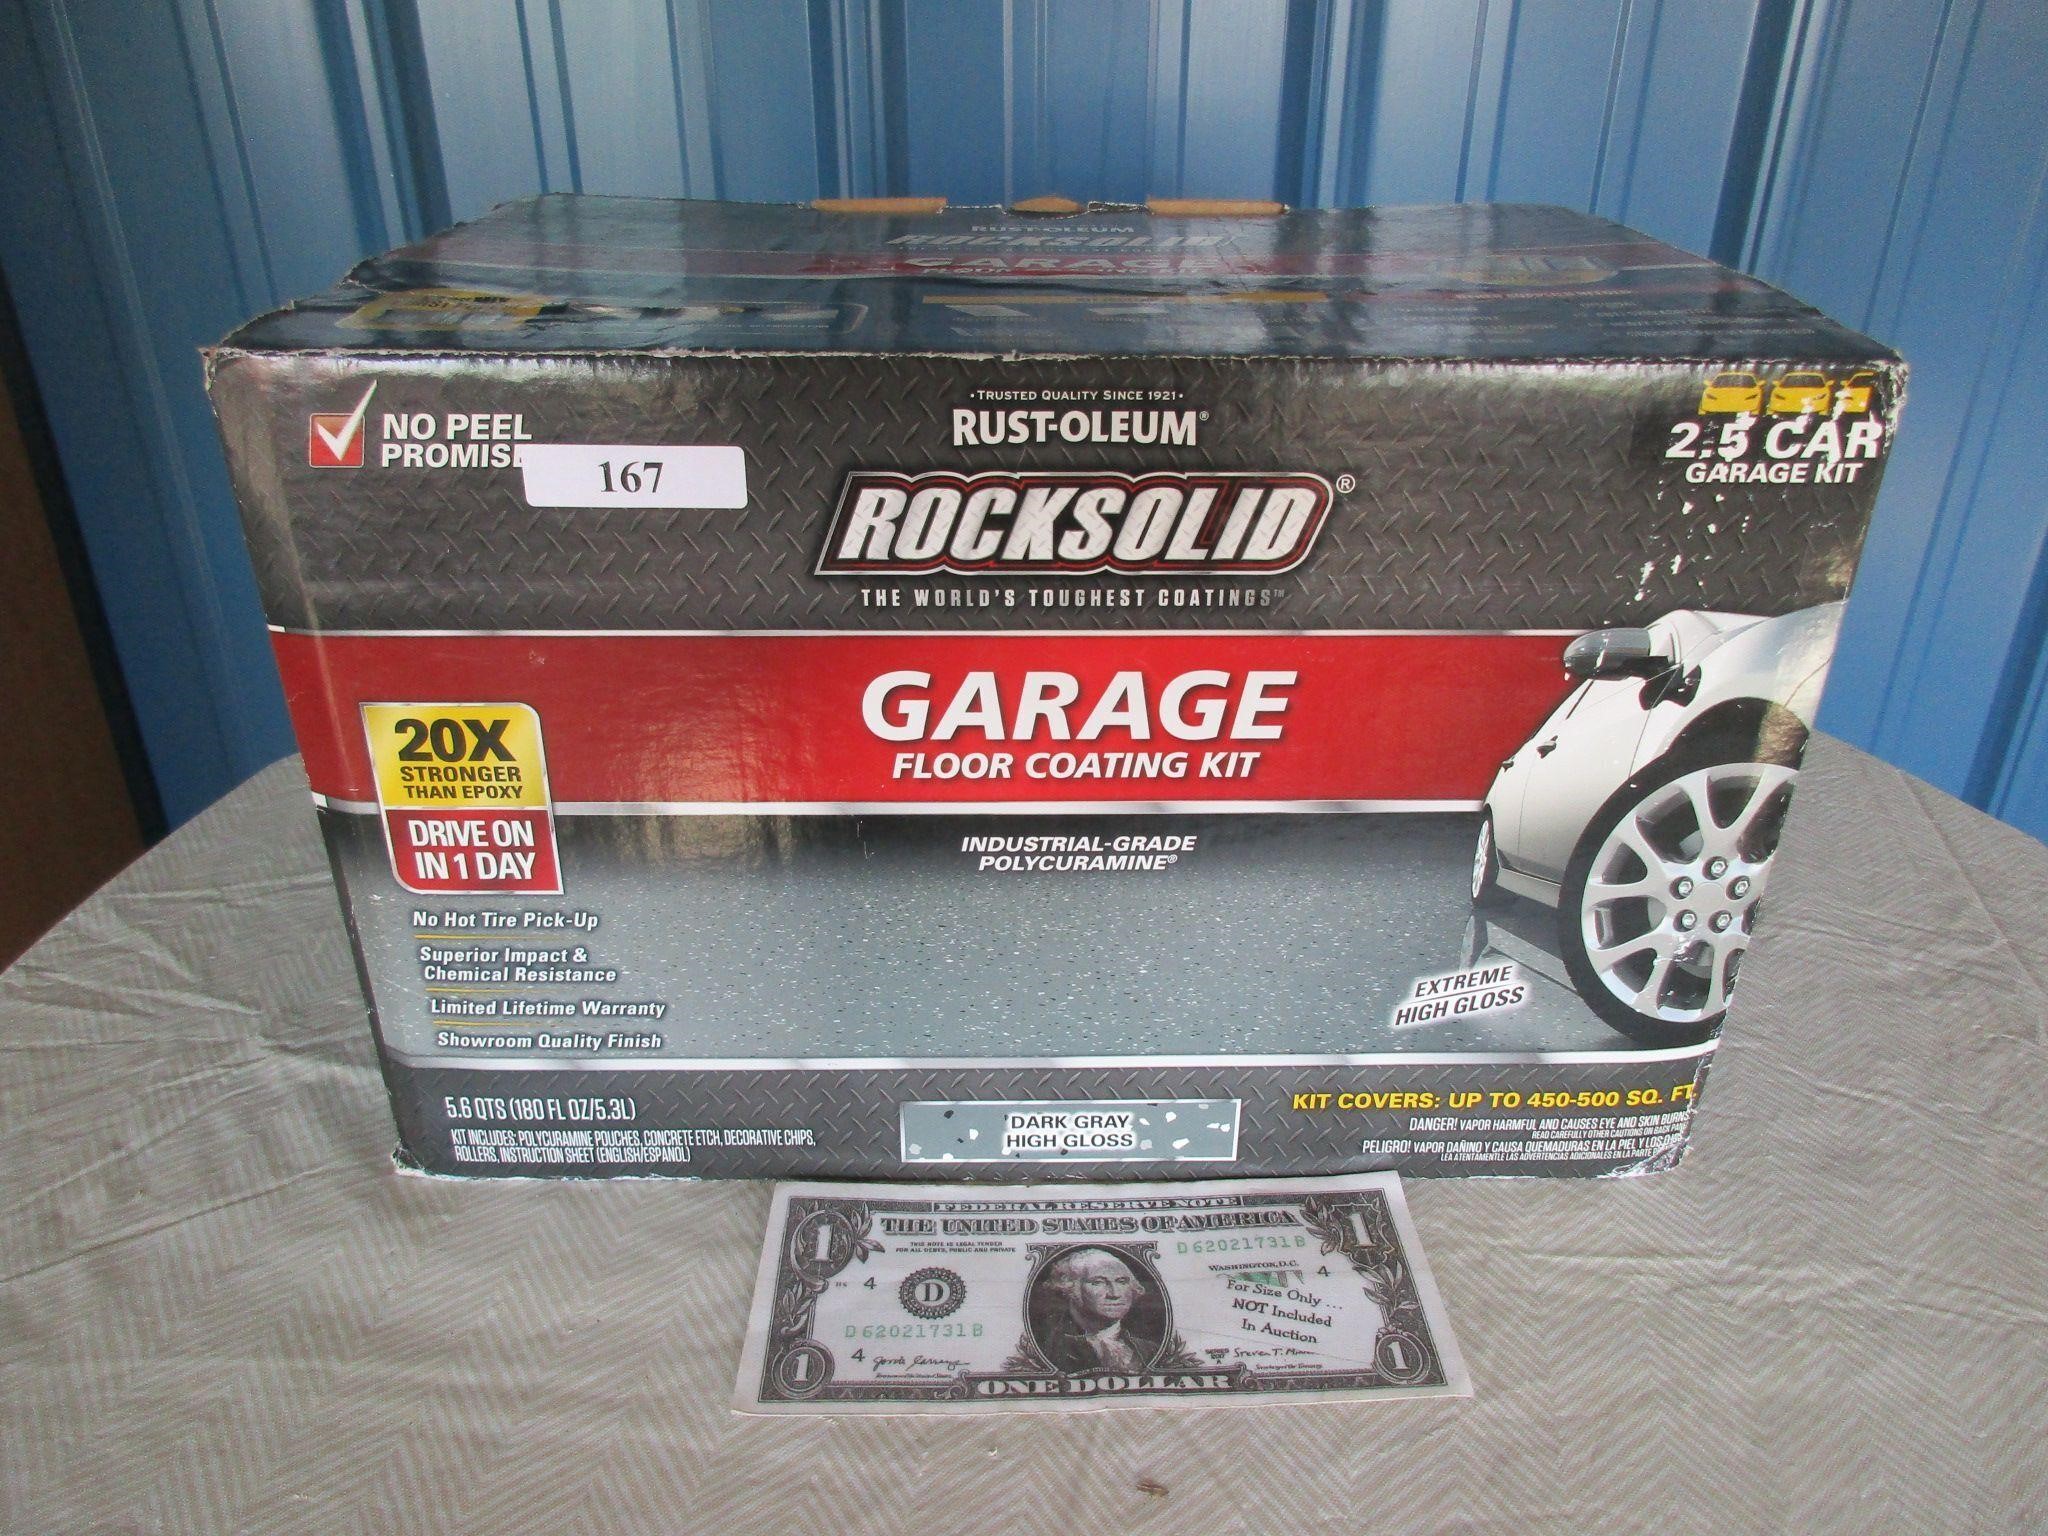 New garage floor coating kit - 2.5 Garage